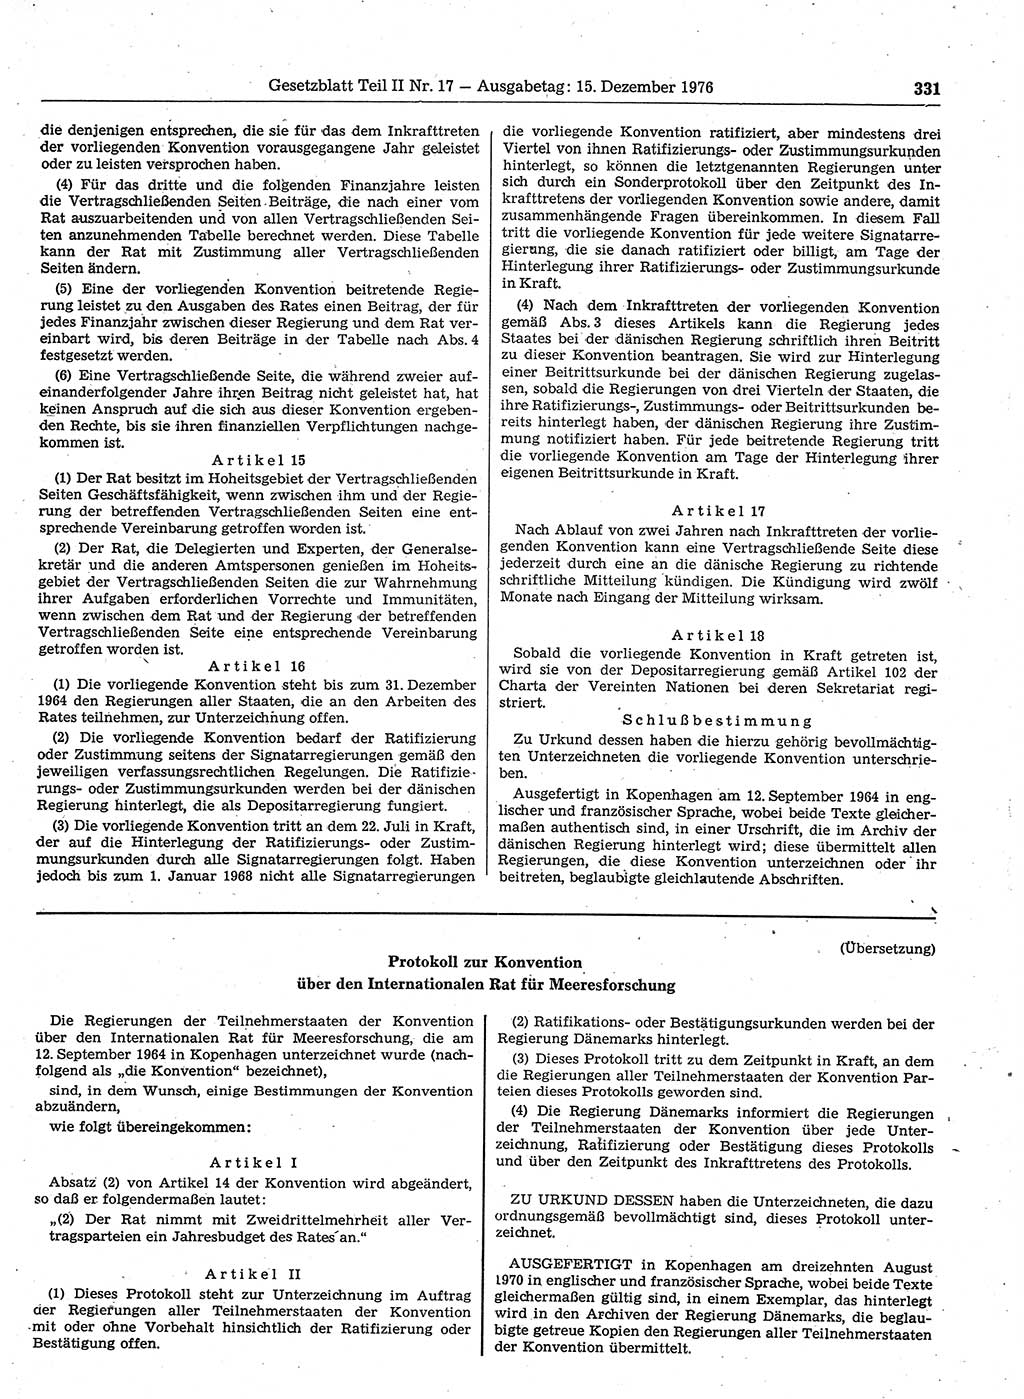 Gesetzblatt (GBl.) der Deutschen Demokratischen Republik (DDR) Teil ⅠⅠ 1976, Seite 331 (GBl. DDR ⅠⅠ 1976, S. 331)